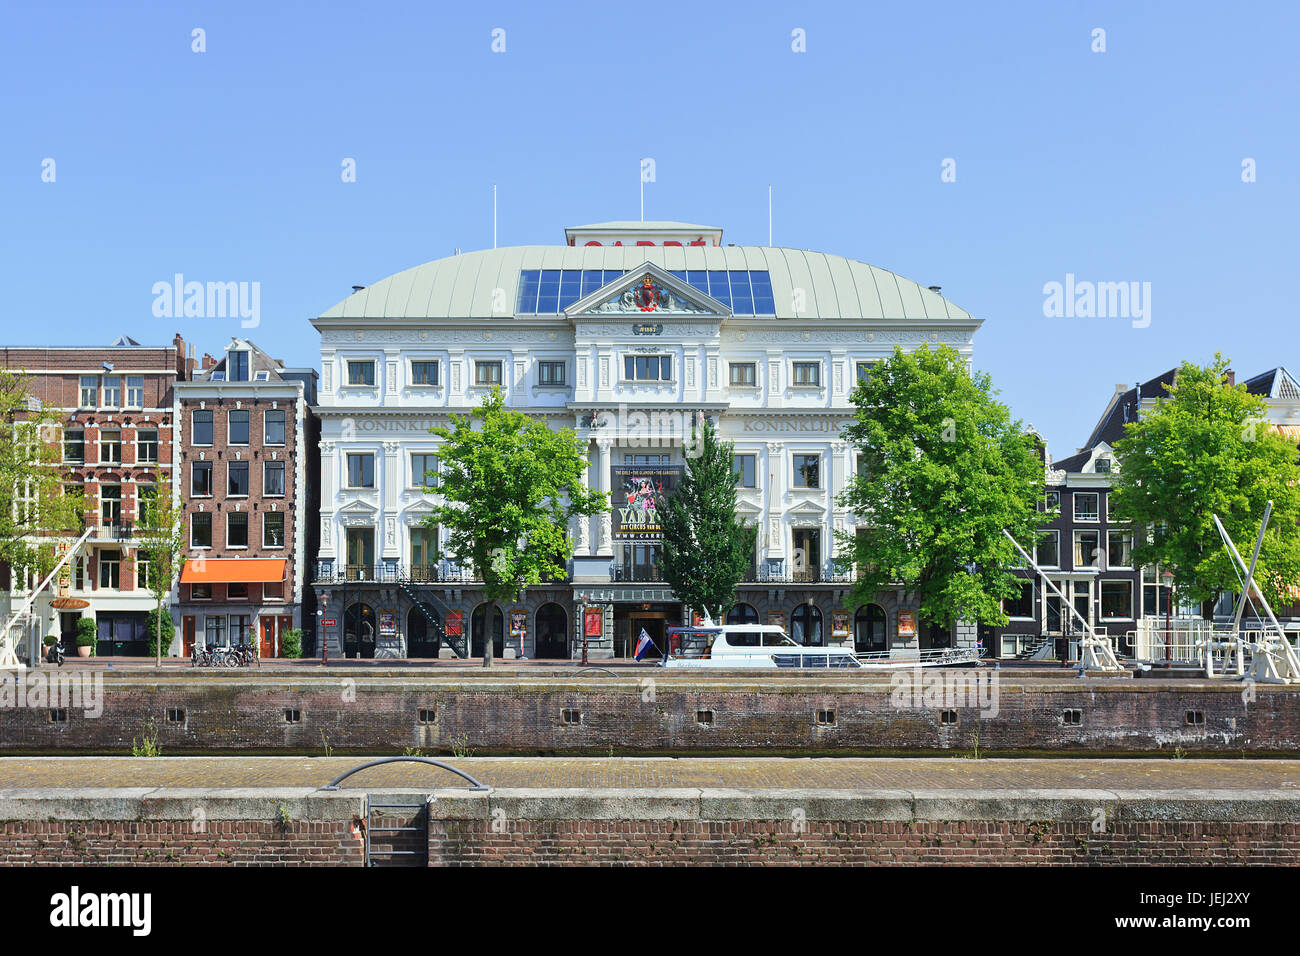 AMSTERDAM-AGO. 19, 2012. Teatro Royal Carré, costruito in stile neo-rinascimentale (1887), situato sul fiume Amstel. Originariamente chiamato Circus Carré. Foto Stock